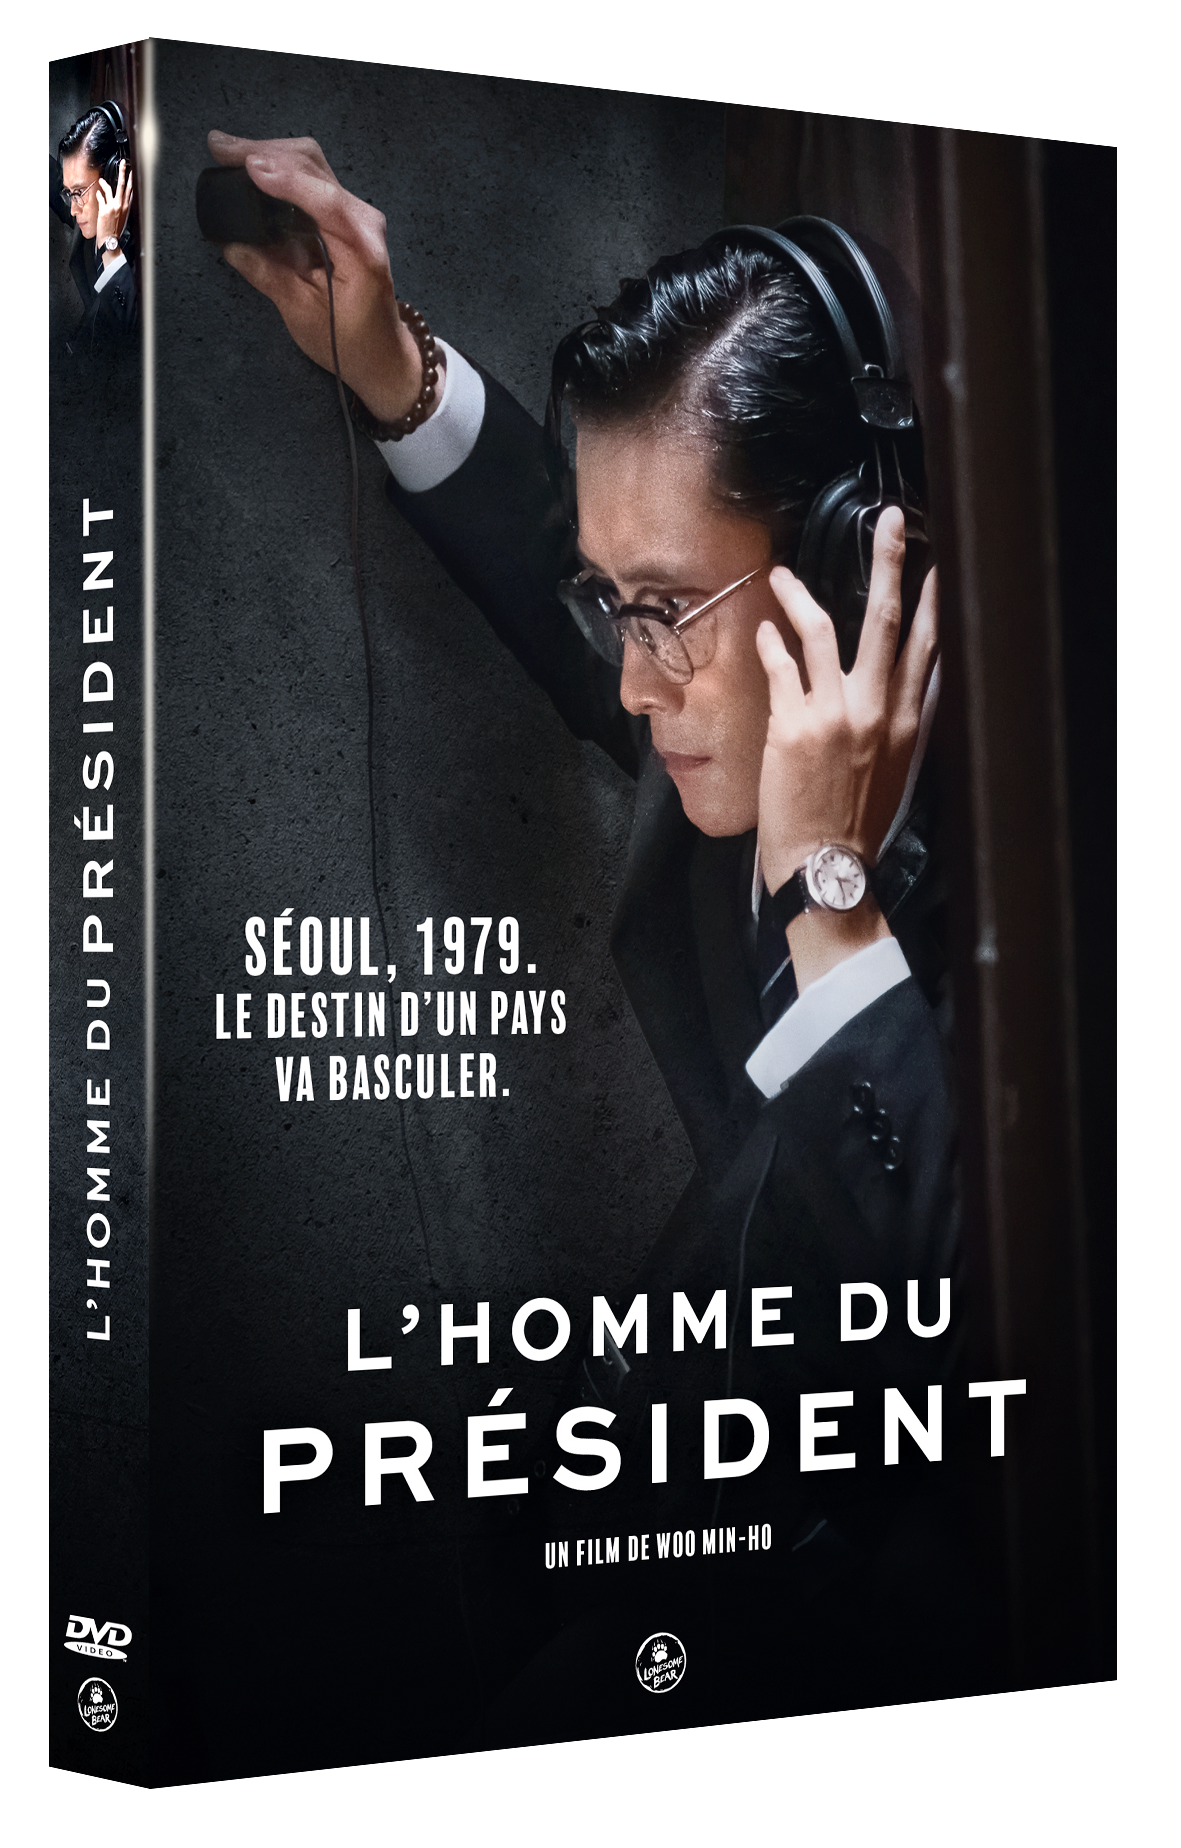 DVD "L'Homme du President"